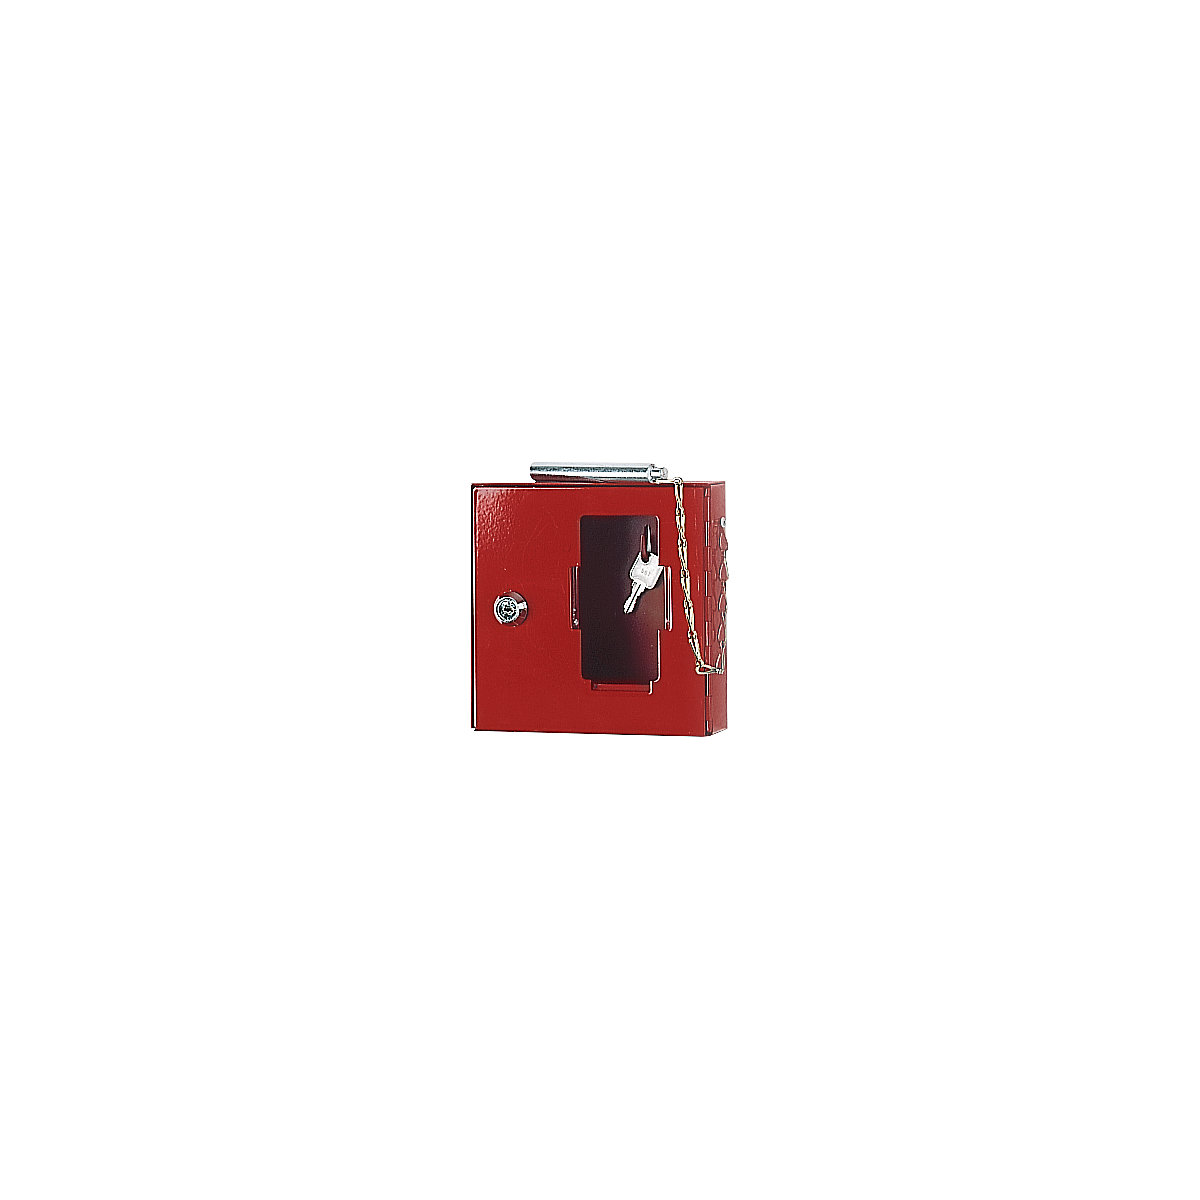 Škatla za ključe za zasilni primer s steklom, s kladivcem za razbitje stekla, VxŠxG 200 x 200 x 50 mm, DE 3 kosi-3